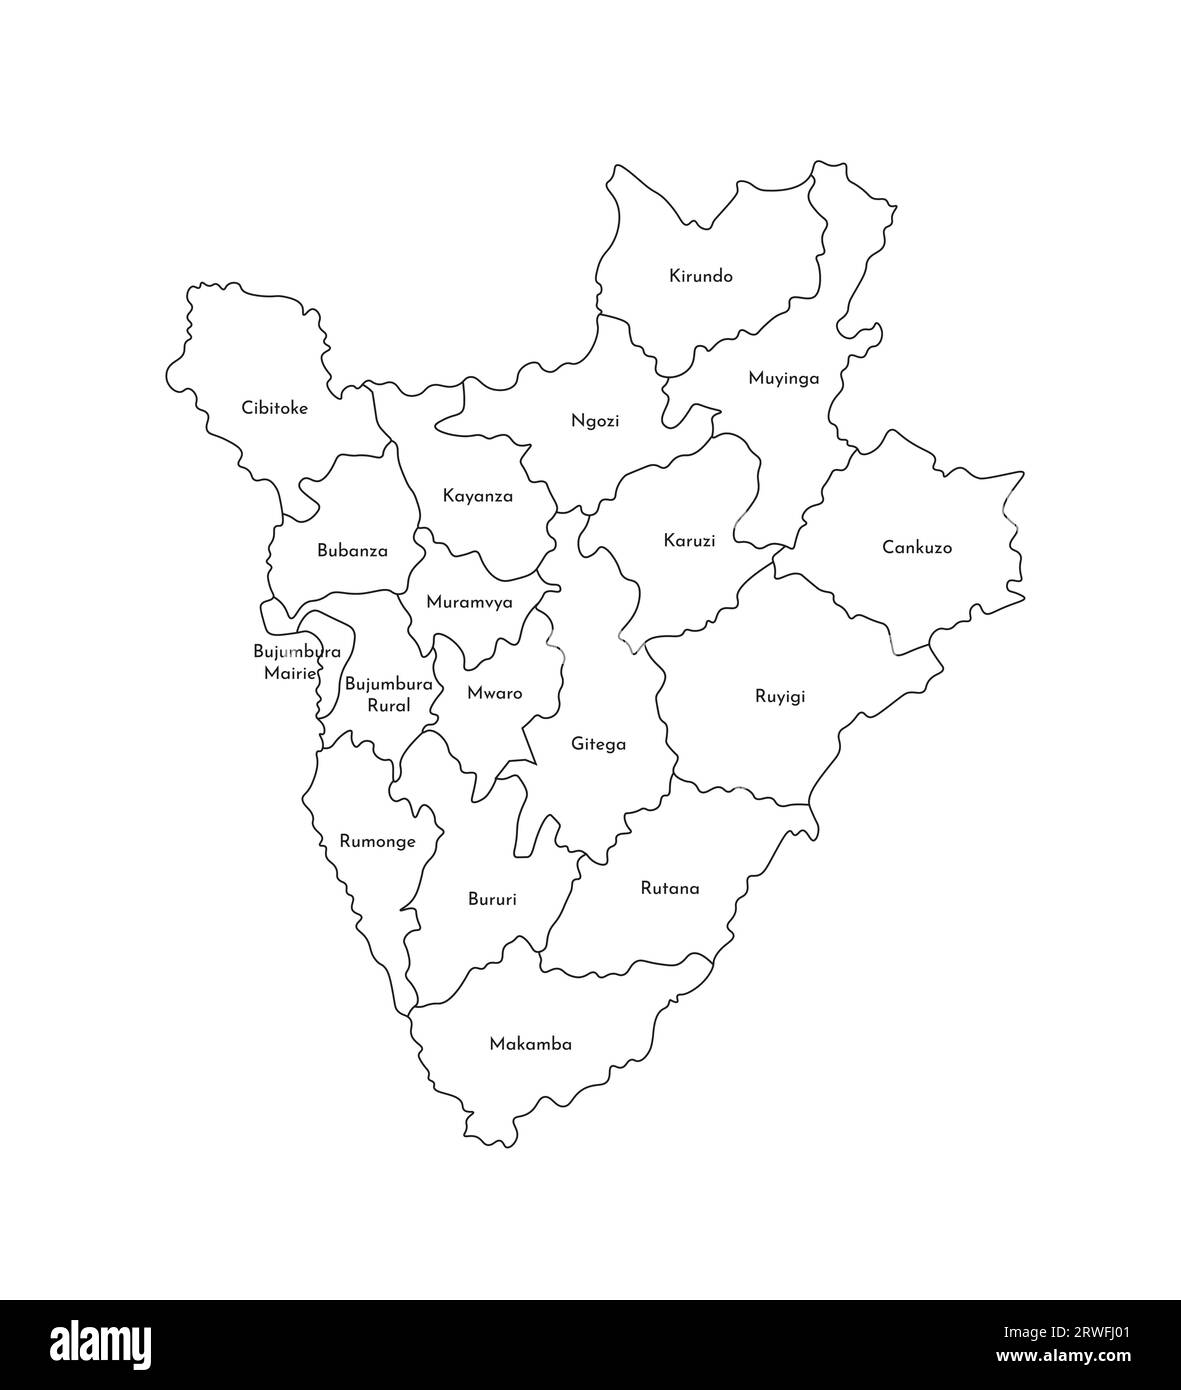 Vektorisolierte Darstellung der vereinfachten Verwaltungskarte Burundis. Grenzen und Namen der Provinzen (Regionen). Silhouetten mit schwarzen Linien. Stock Vektor